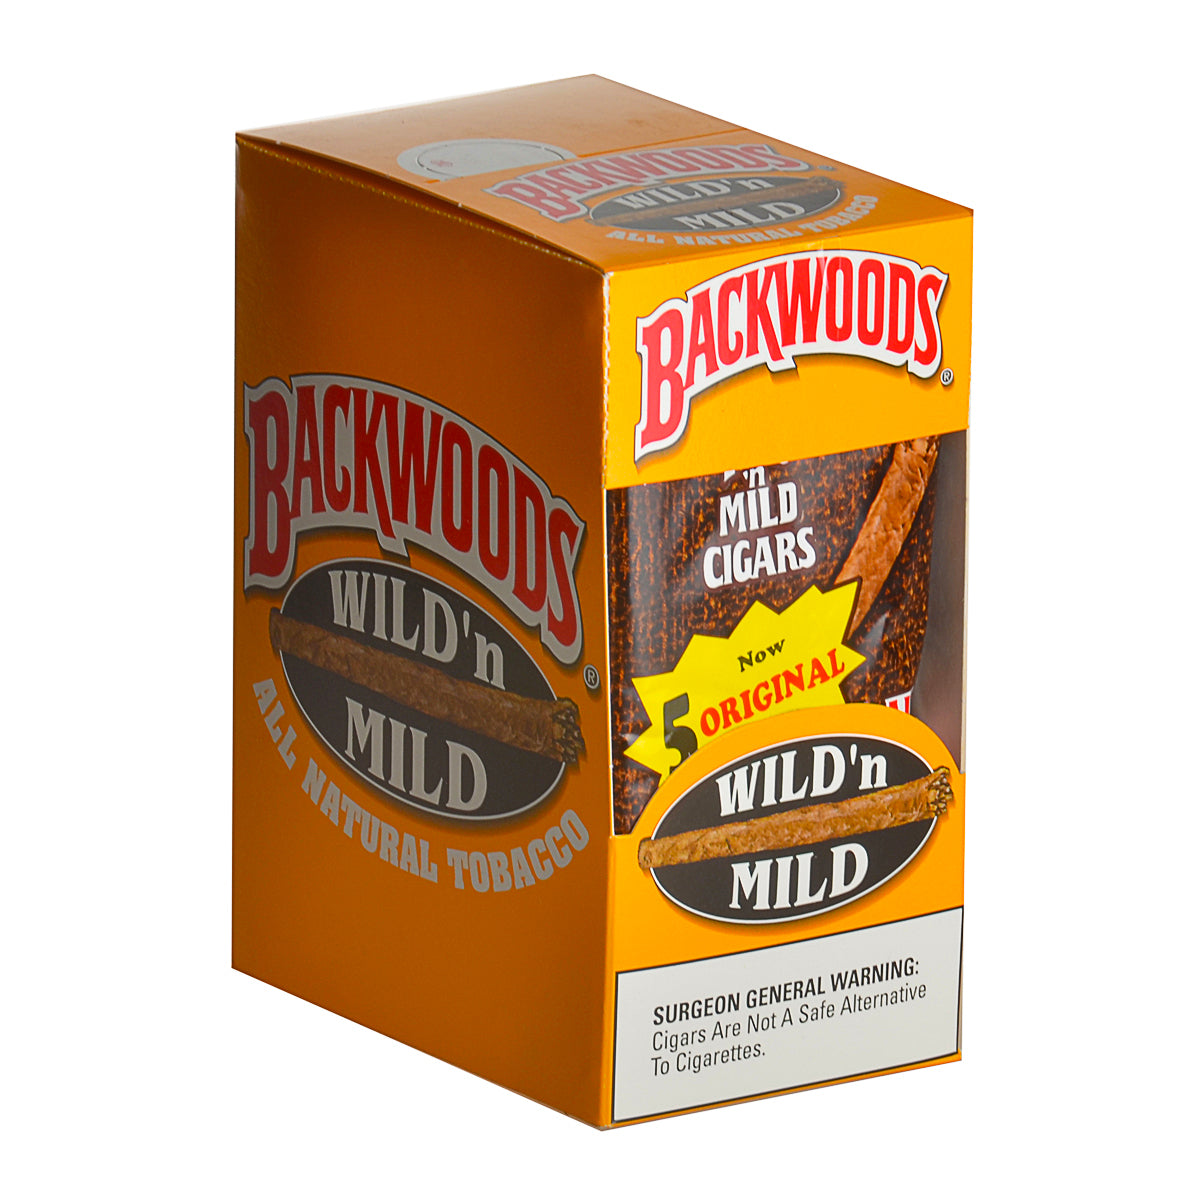 Backwoods Original (5 pack) - Bittchaser Smoke Shop